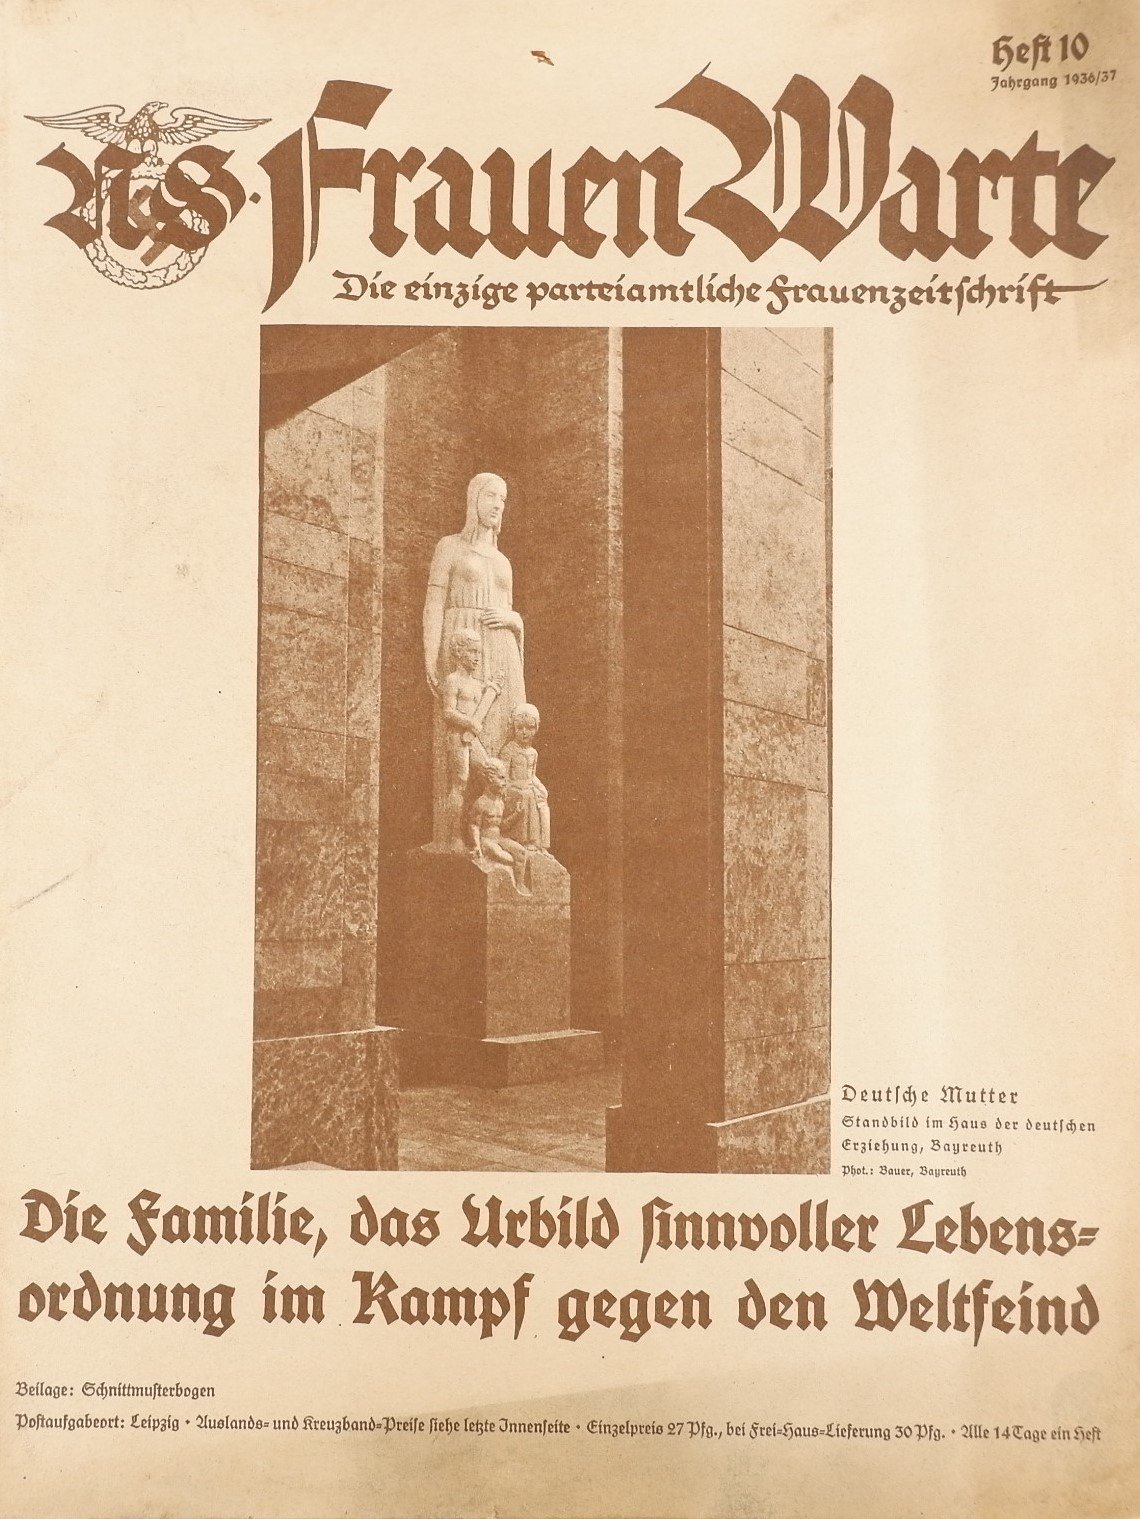 Frauen Warte – Die einzige parteiamtliche Frauenzeitschrift Heft 10 1936/37 (Volkskunde- und Freilichtmuseum Roscheider Hof RR-F)